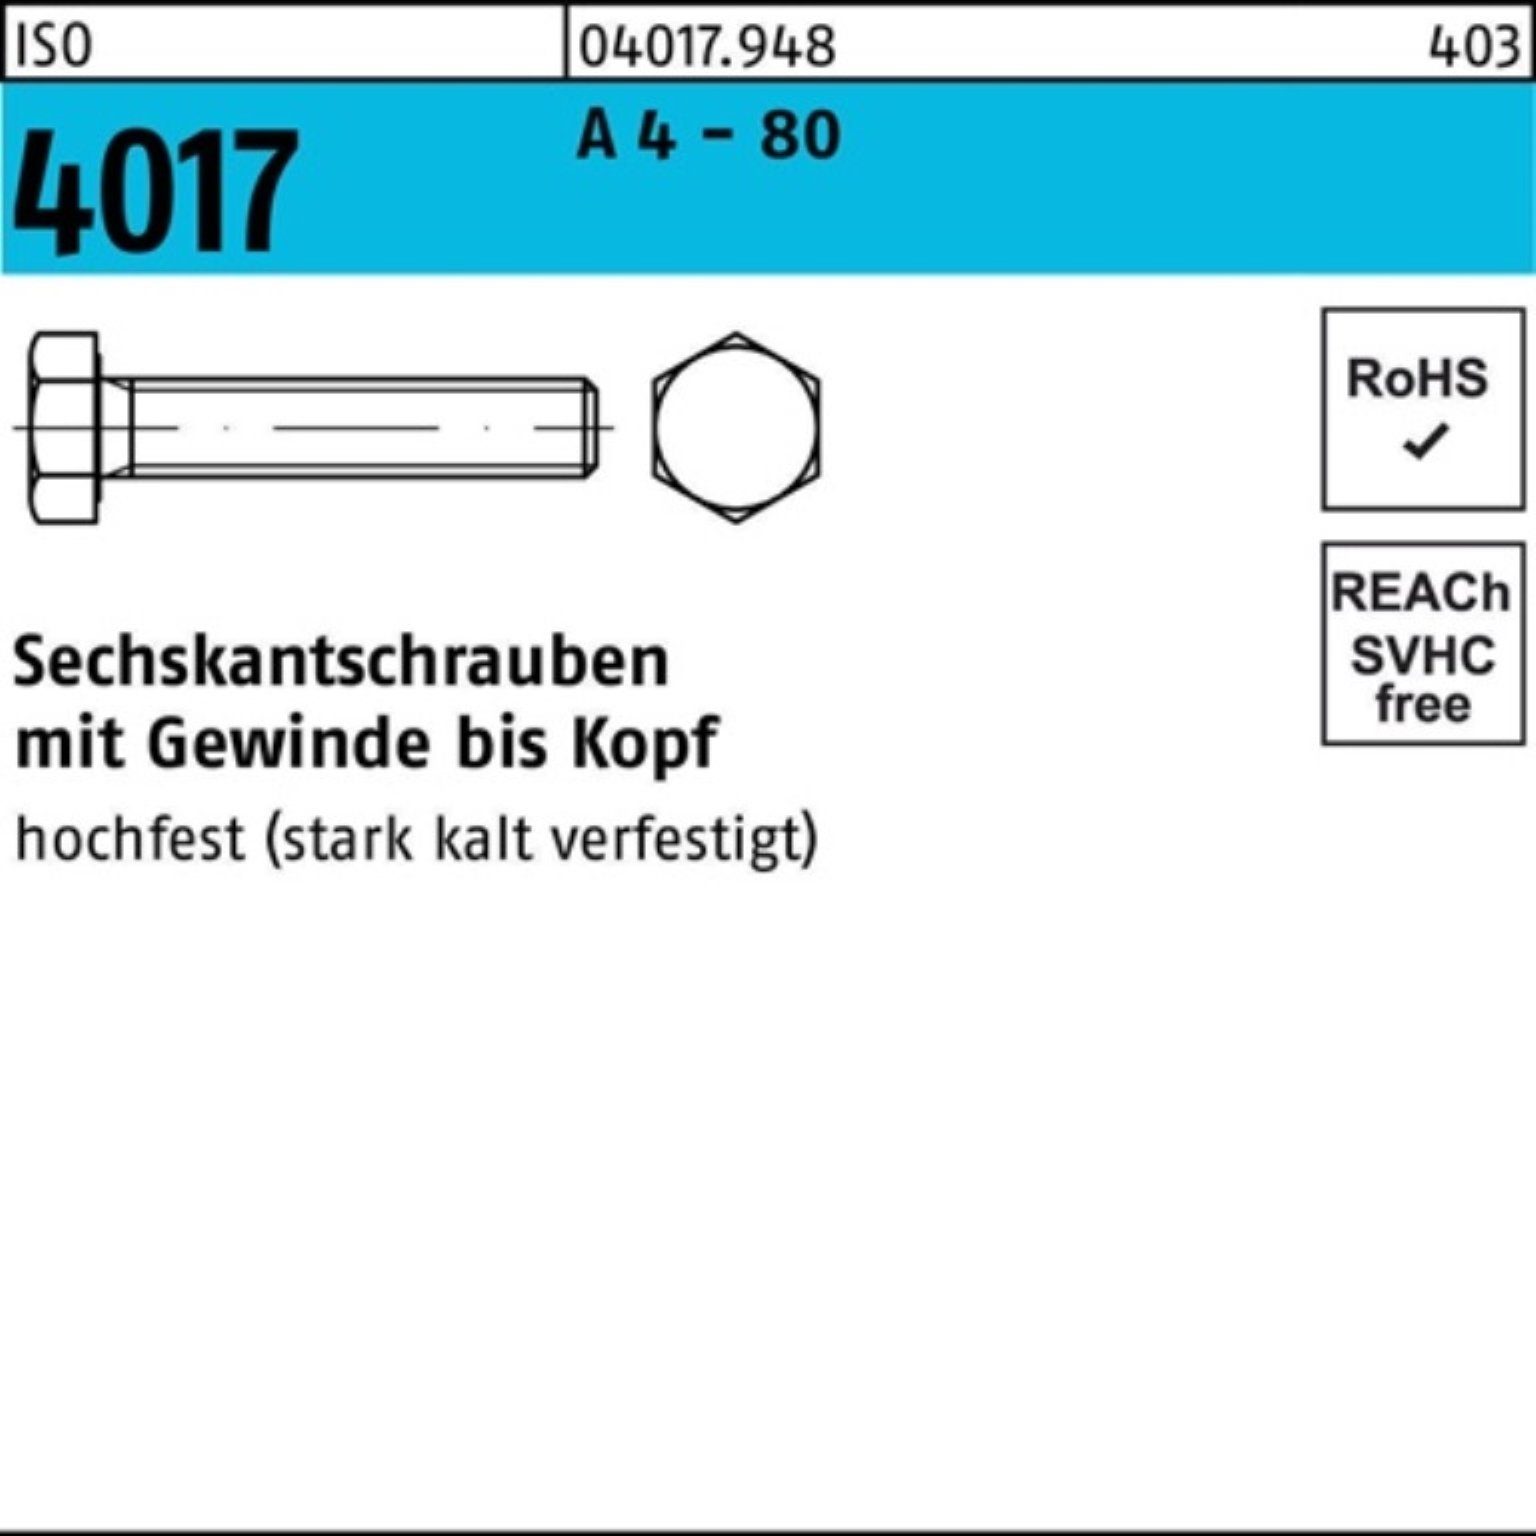 Bufab Sechskantschraube 100er Pack Sechskantschraube ISO 4017 VG M10x 35 A 4 - 80 100 Stück I